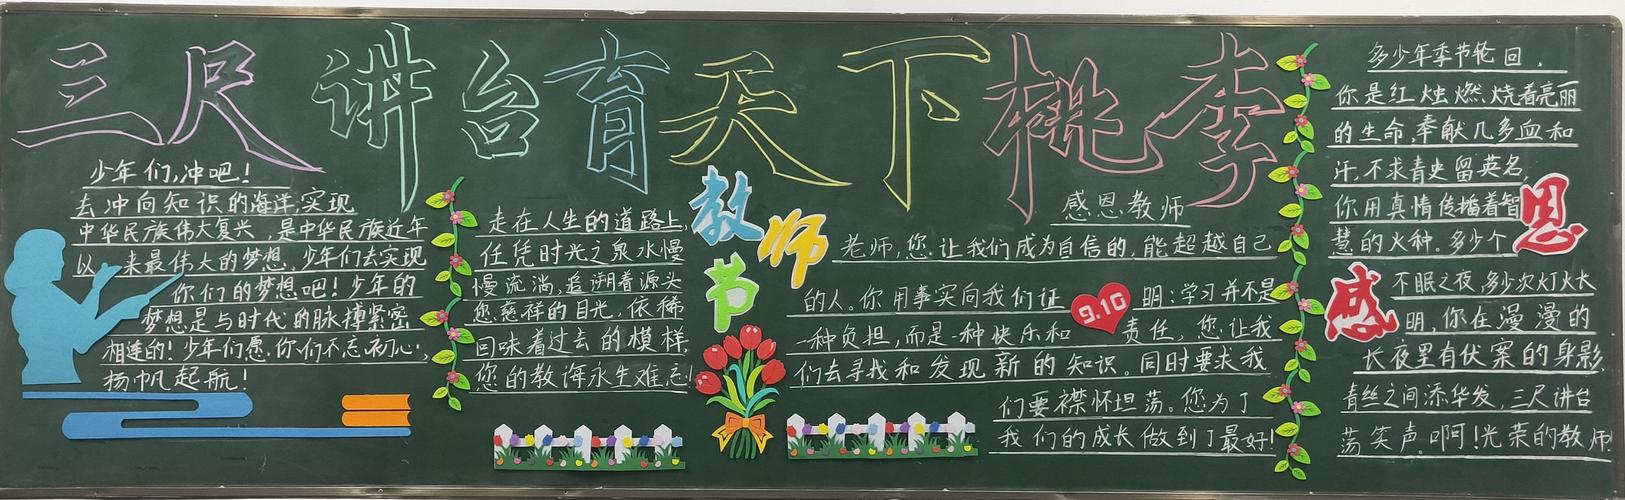 翔中学庆祝第36个教师节主题黑板报评比初一年级部分班级优秀作品展